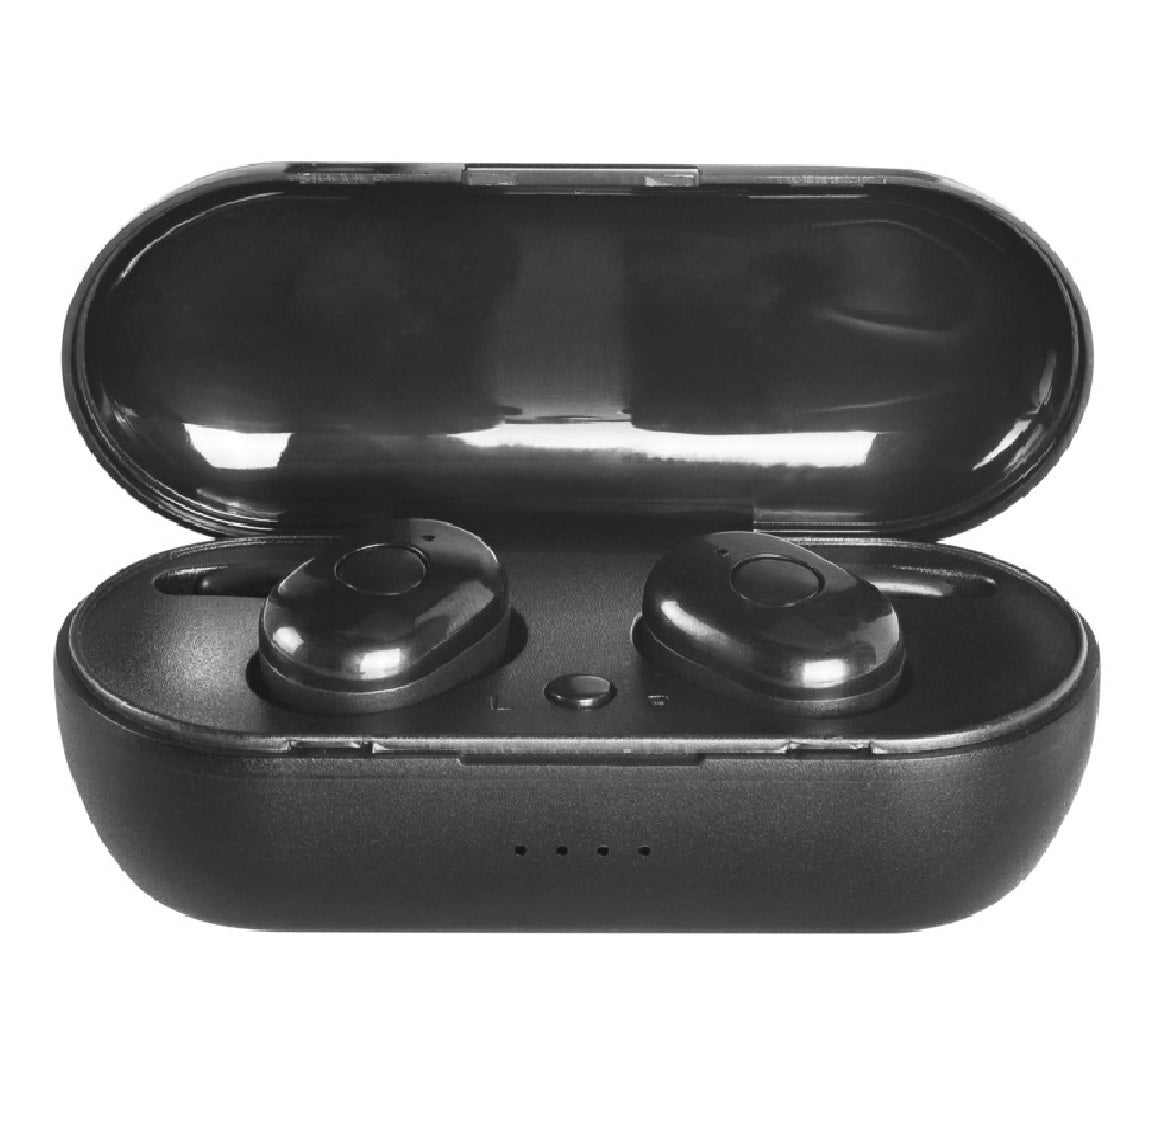 PowerZone KL-015BT TWS Wireless Earbuds, Black